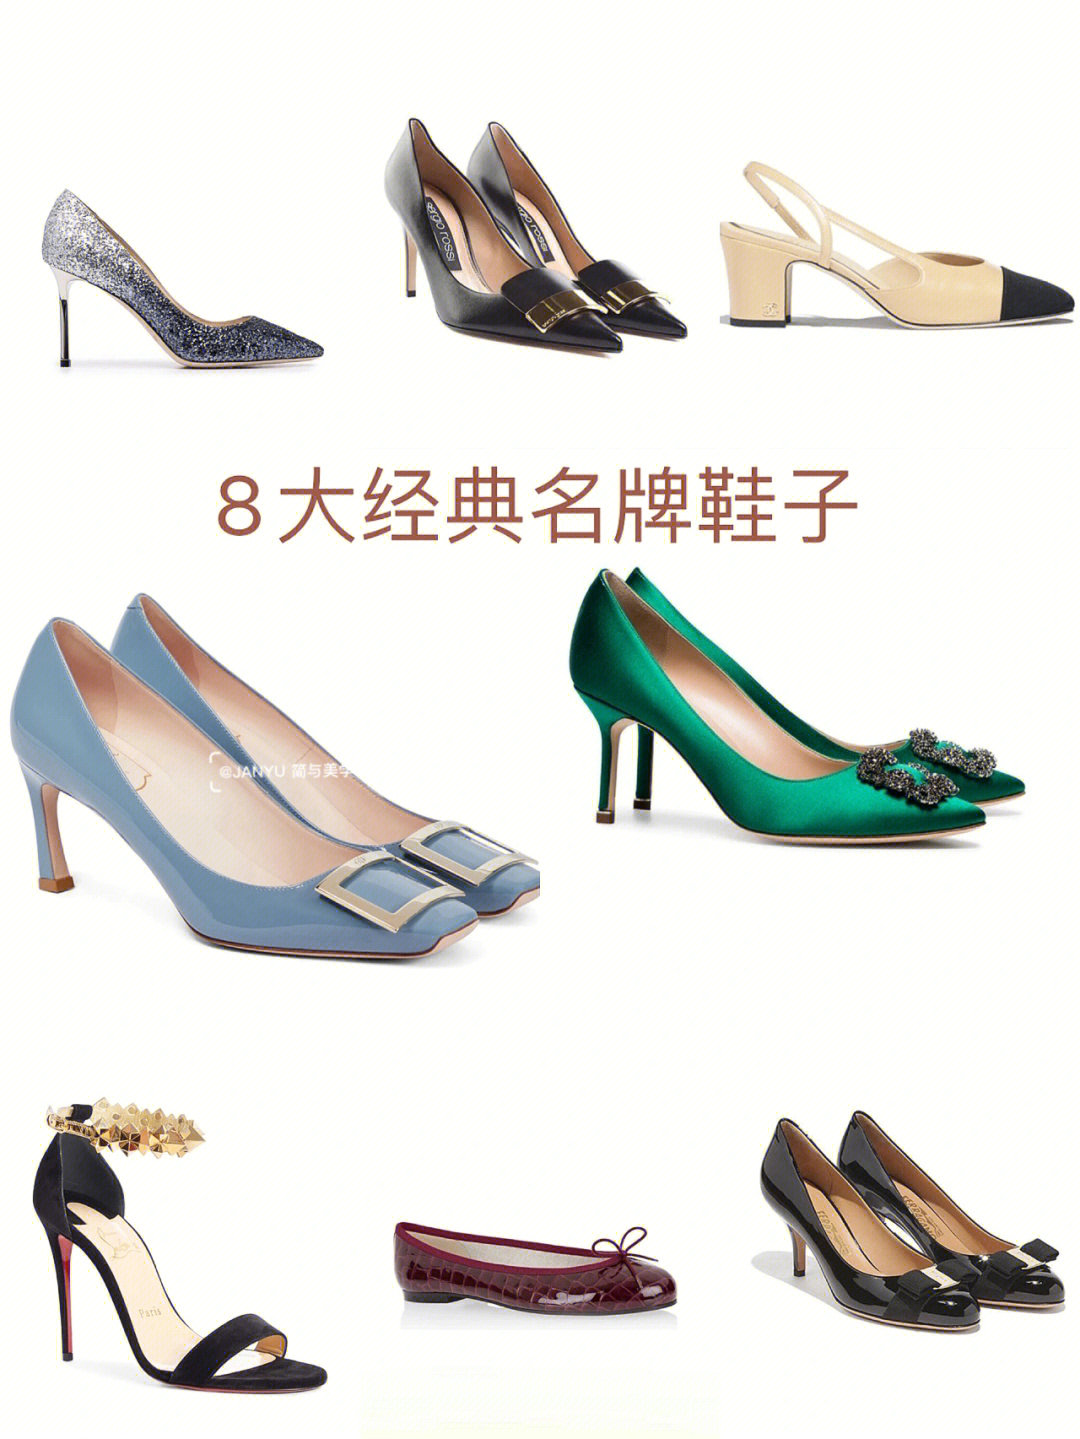 三四线城市女鞋品牌图片